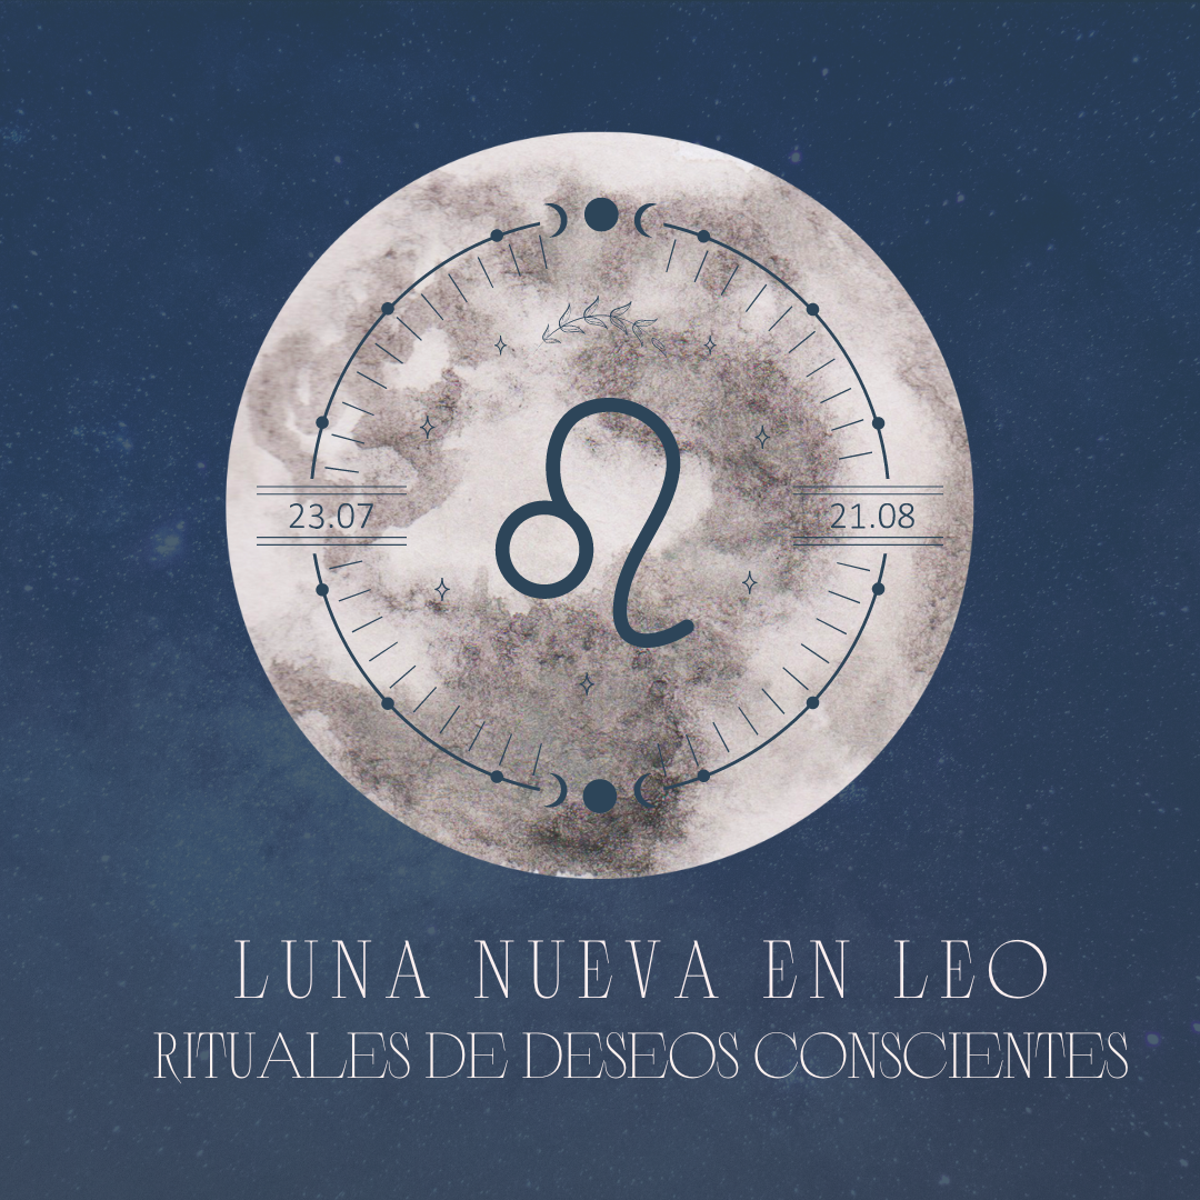 Luna nueva en Leo ¿Cómo me ayudan los deseos y rituales durante la